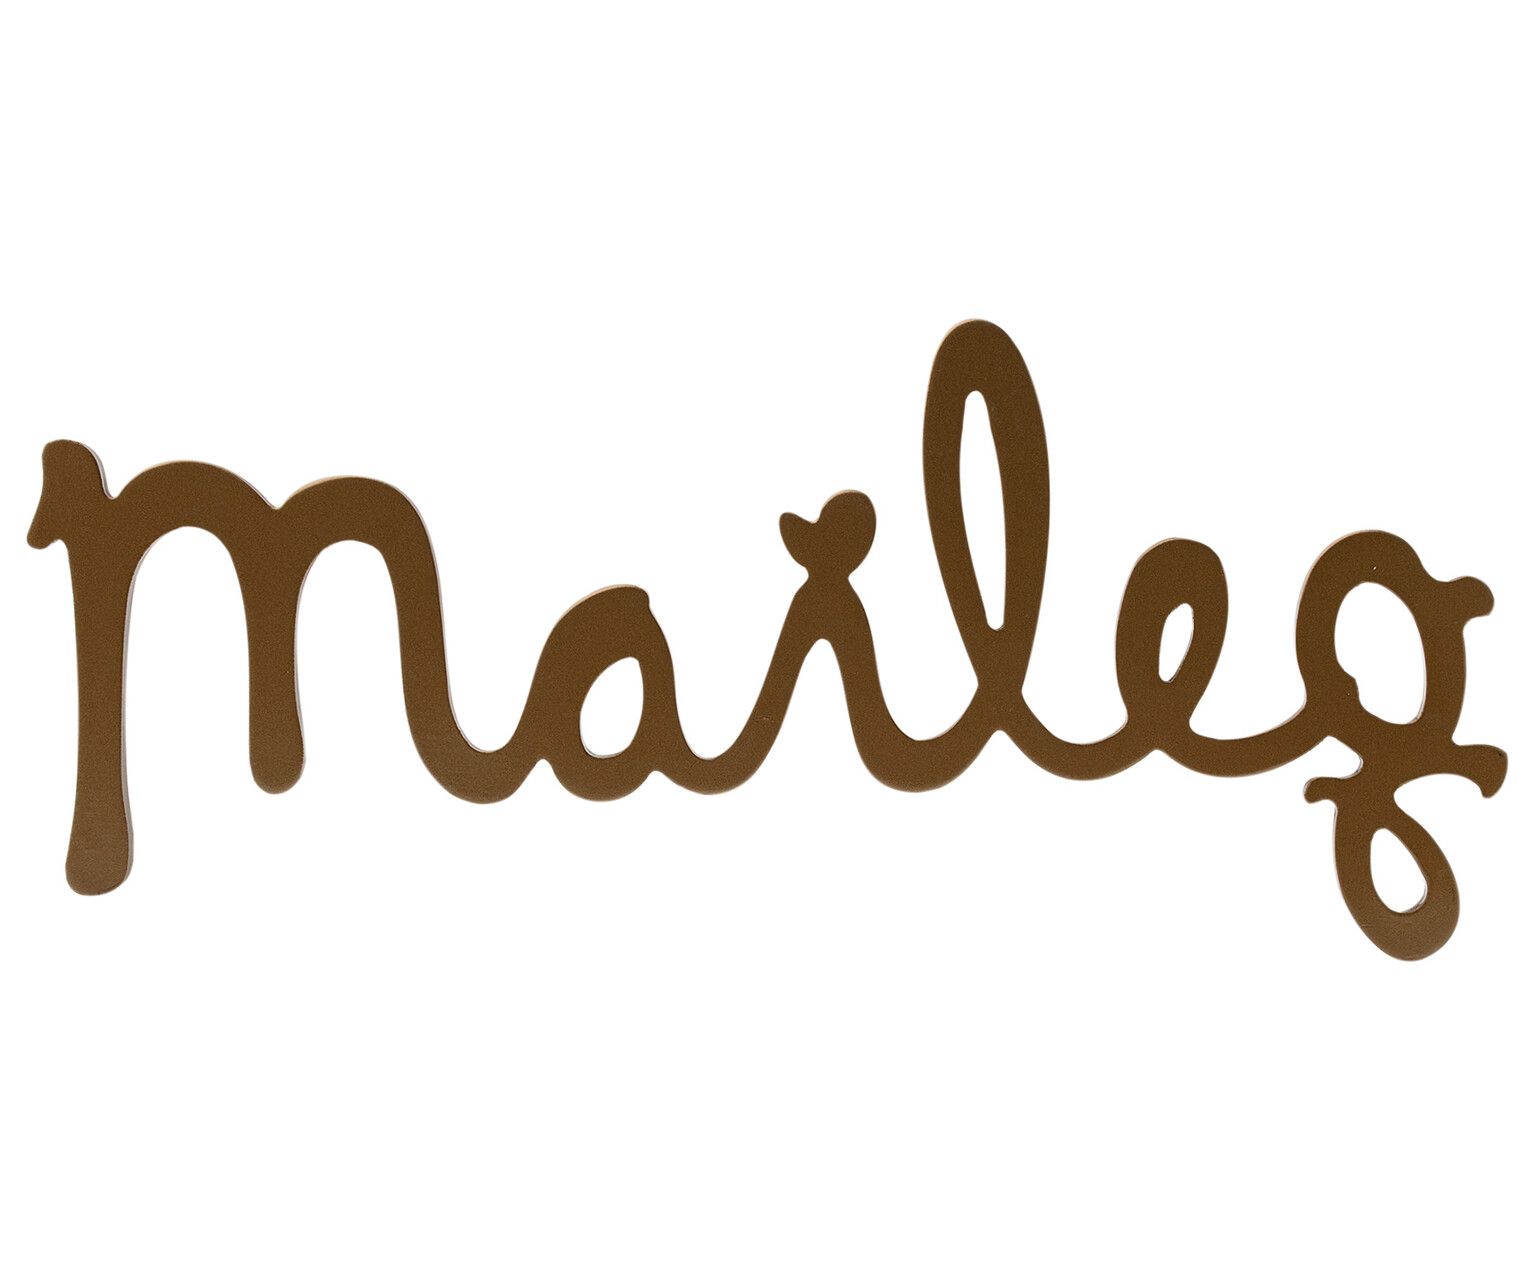 Логотип Maileg золотой, деревянный